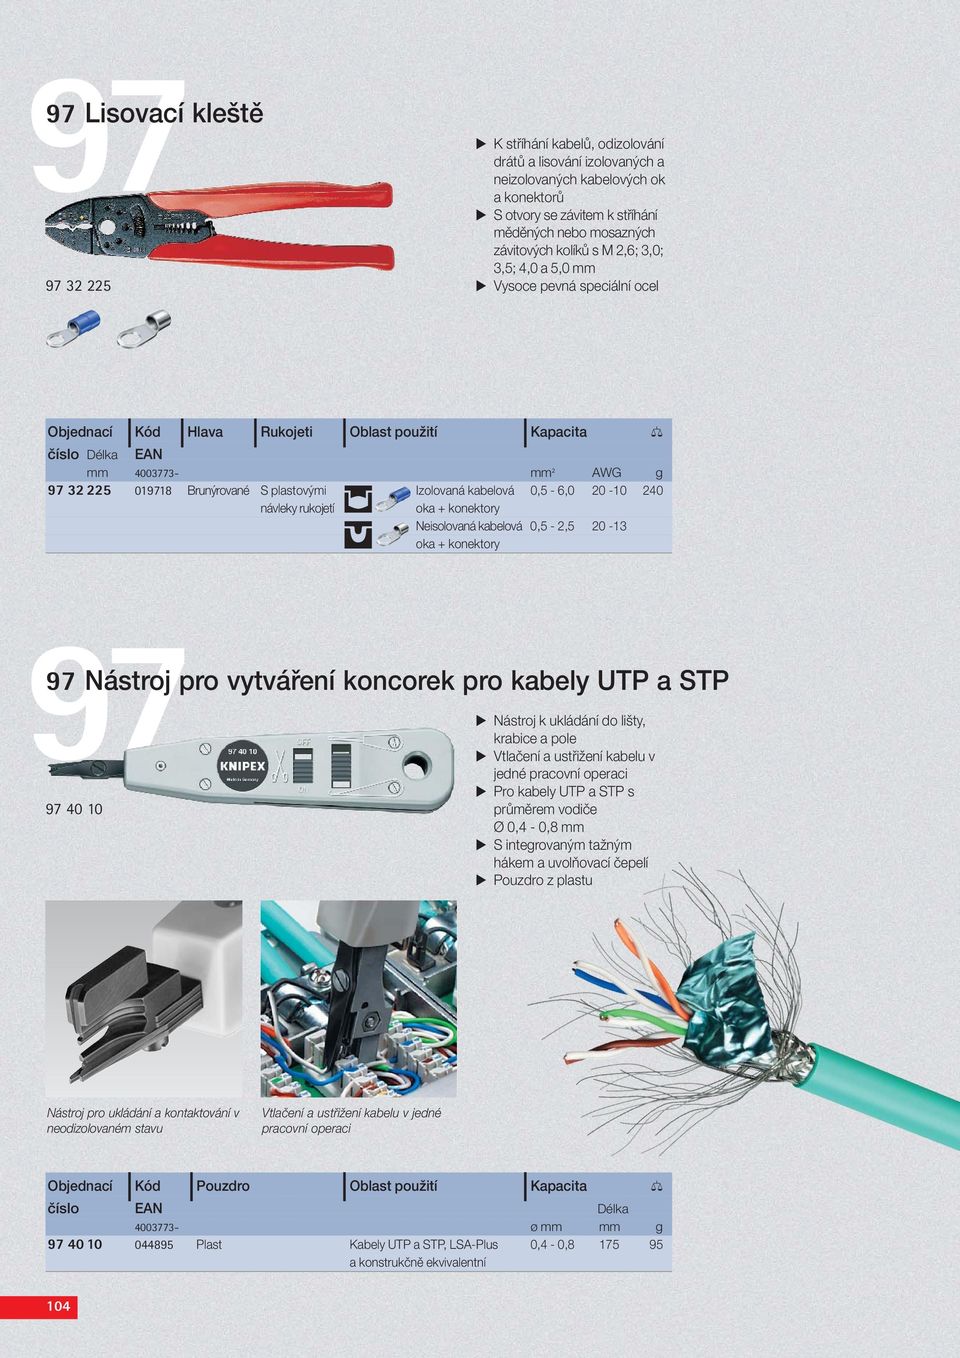 plastovými Izolovaná kabelová 0,5-6,0 20-10 240 návleky rukojetí Neisolovaná kabelová 0,5-2,5 20-13 97 Nástroj pro vytváření koncorek pro kabely UTP a STP 97 40 10 Nástroj k ukládání do lišty,